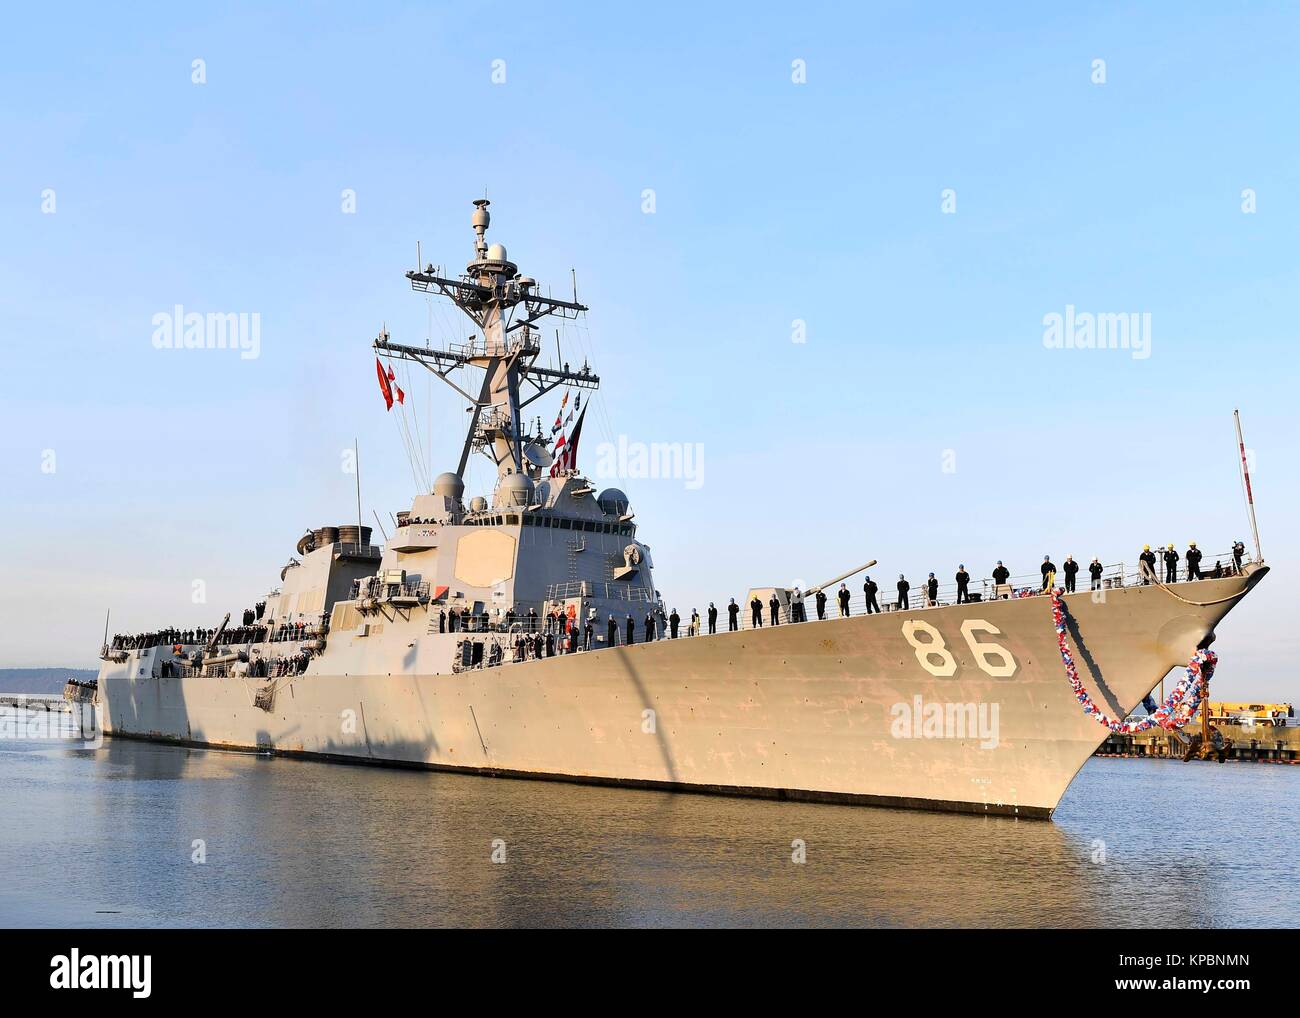 La Marina de los Estados Unidos de clase Arleigh Burke de misiles guiados destructor USS Shoup regresa a casa a la Estación Naval Everett Diciembre 10, 2017 en Everett, Washington. Foto de stock